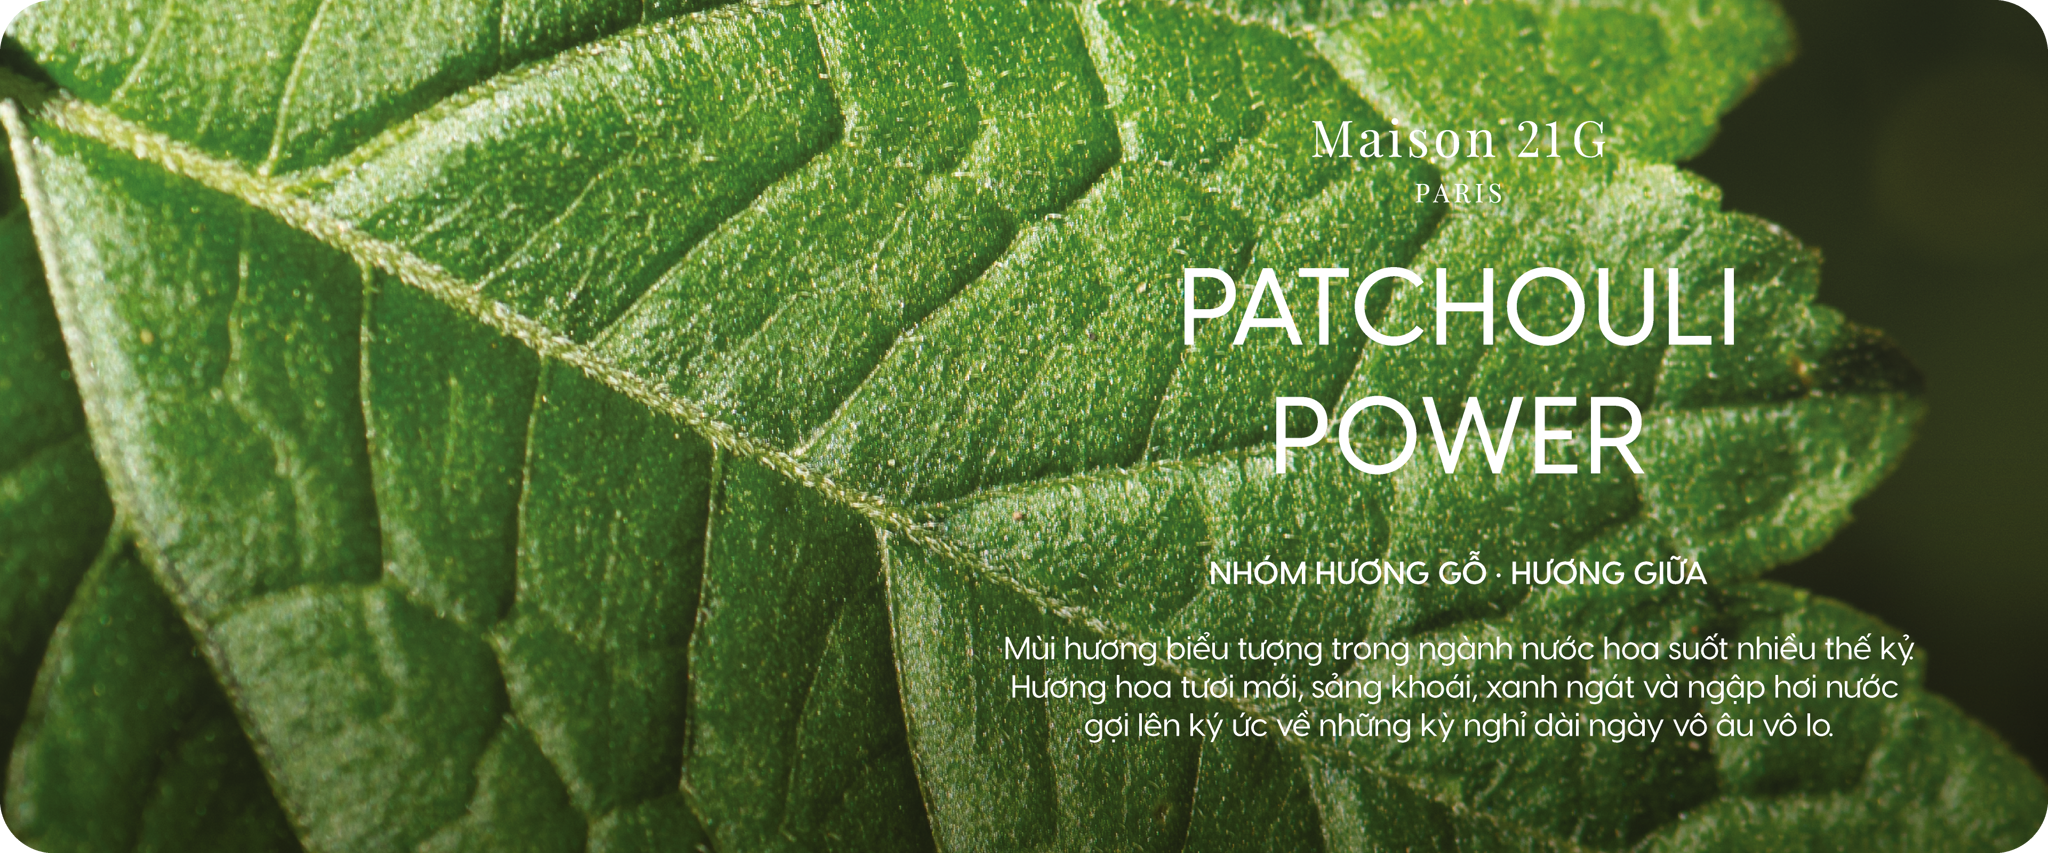 Patchouli Power - Hoắc hương